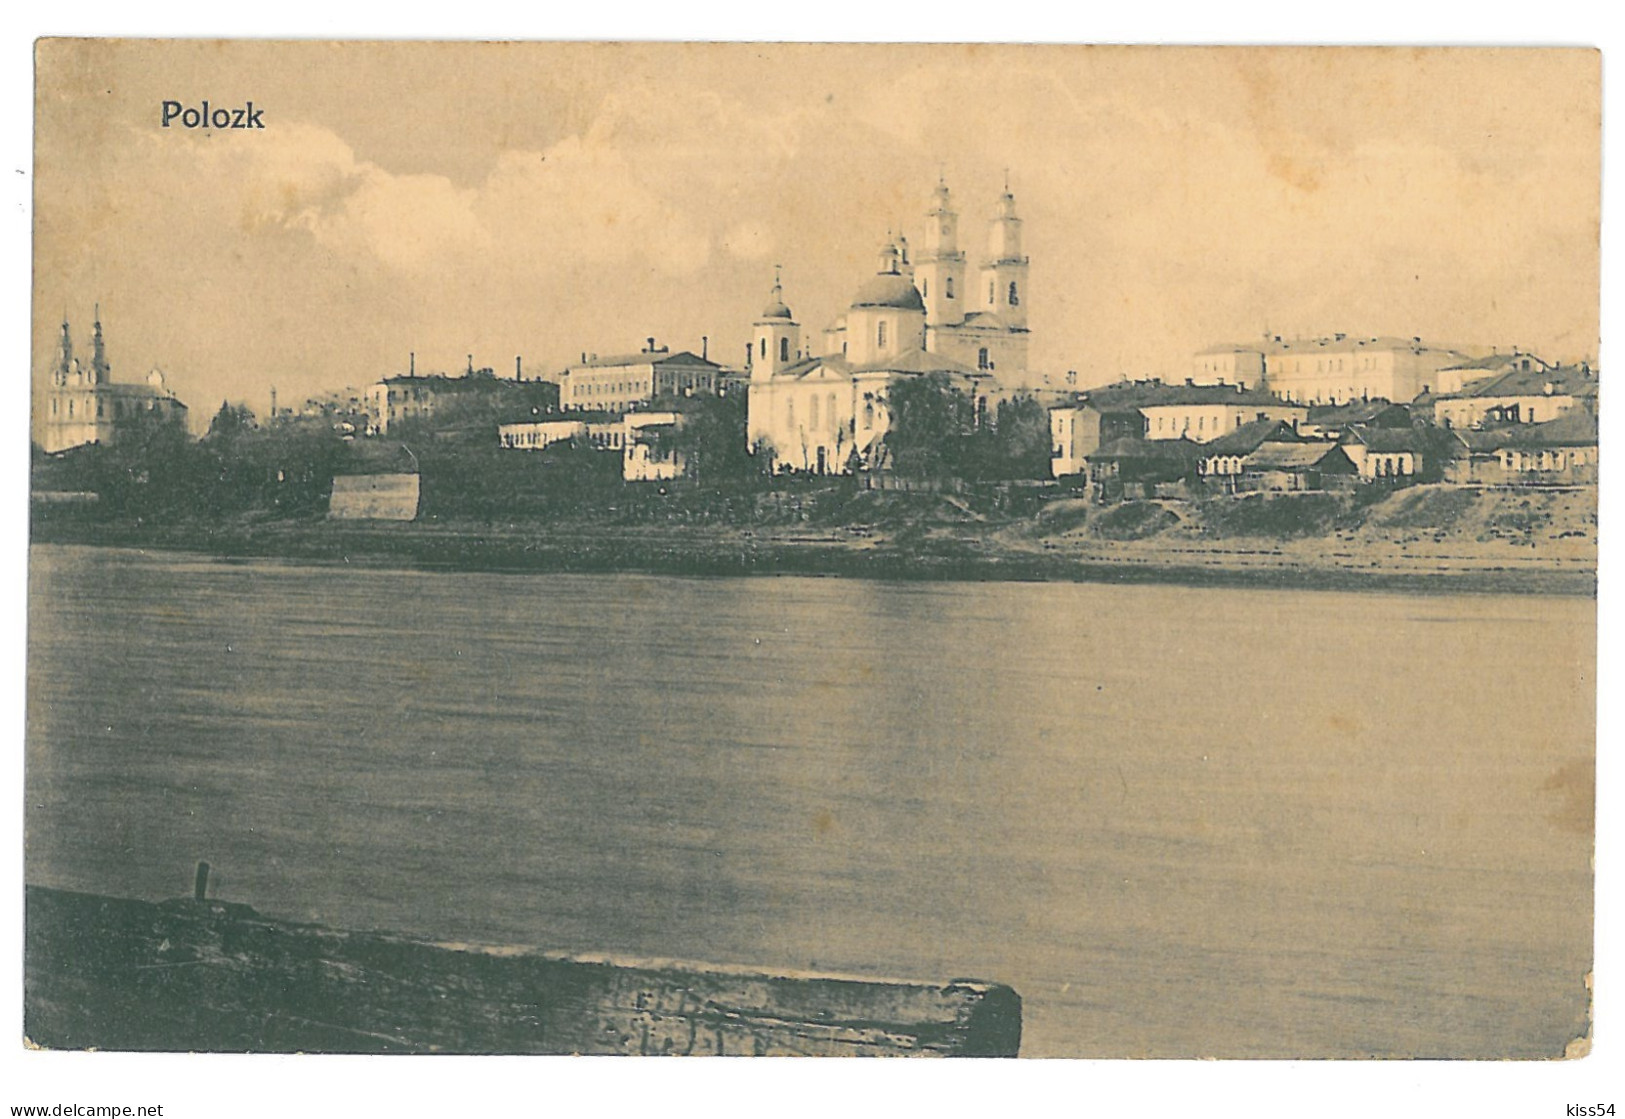 BL 21 - 12970 POLATSK, Belarus, River And Church - Old Postcard, CENSOR - Used - 1918 - Belarus